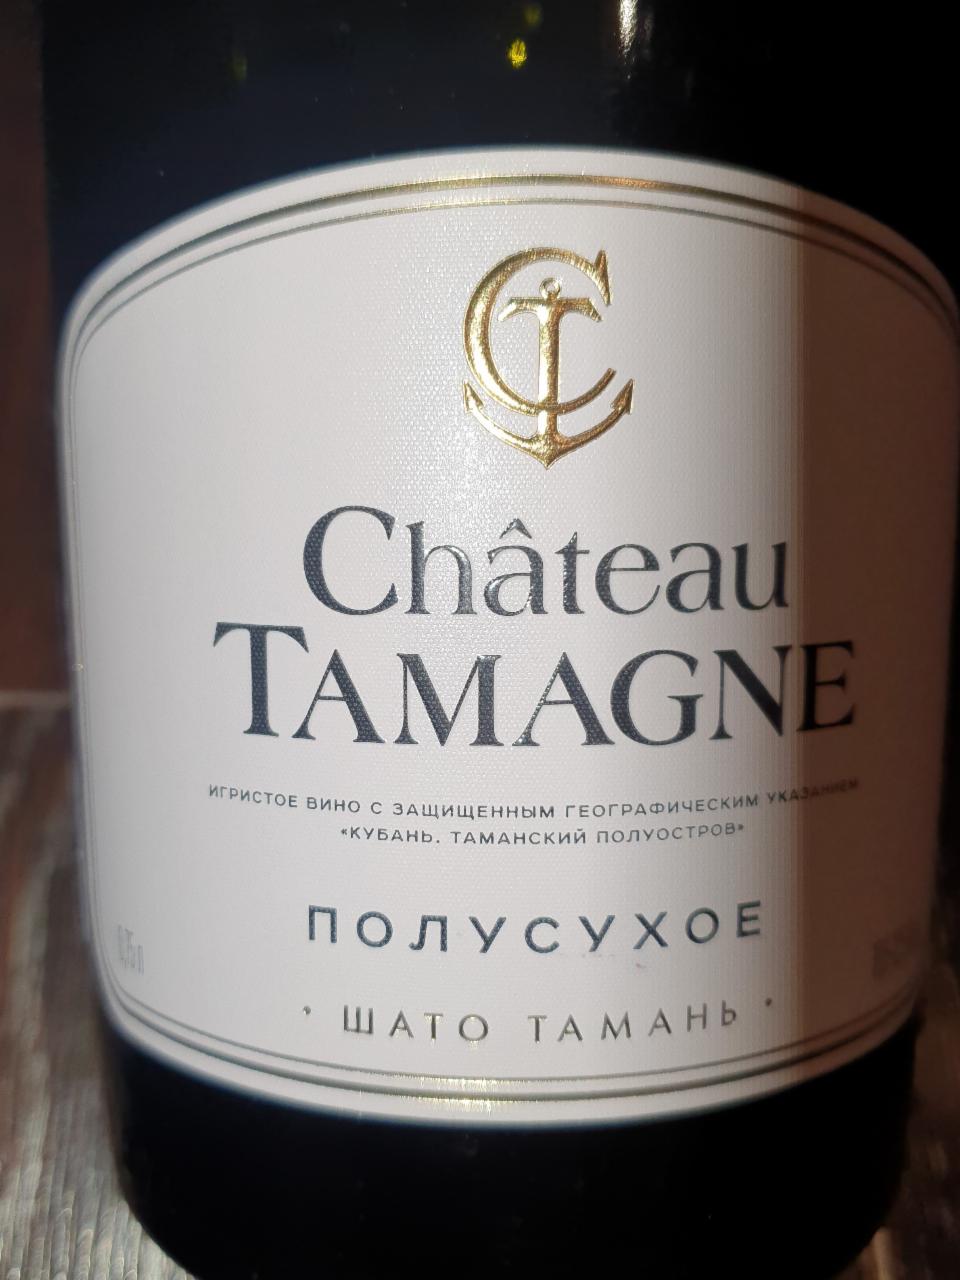 Фото - Игристое вино полусухое Шото тамань Chateau Tamagne